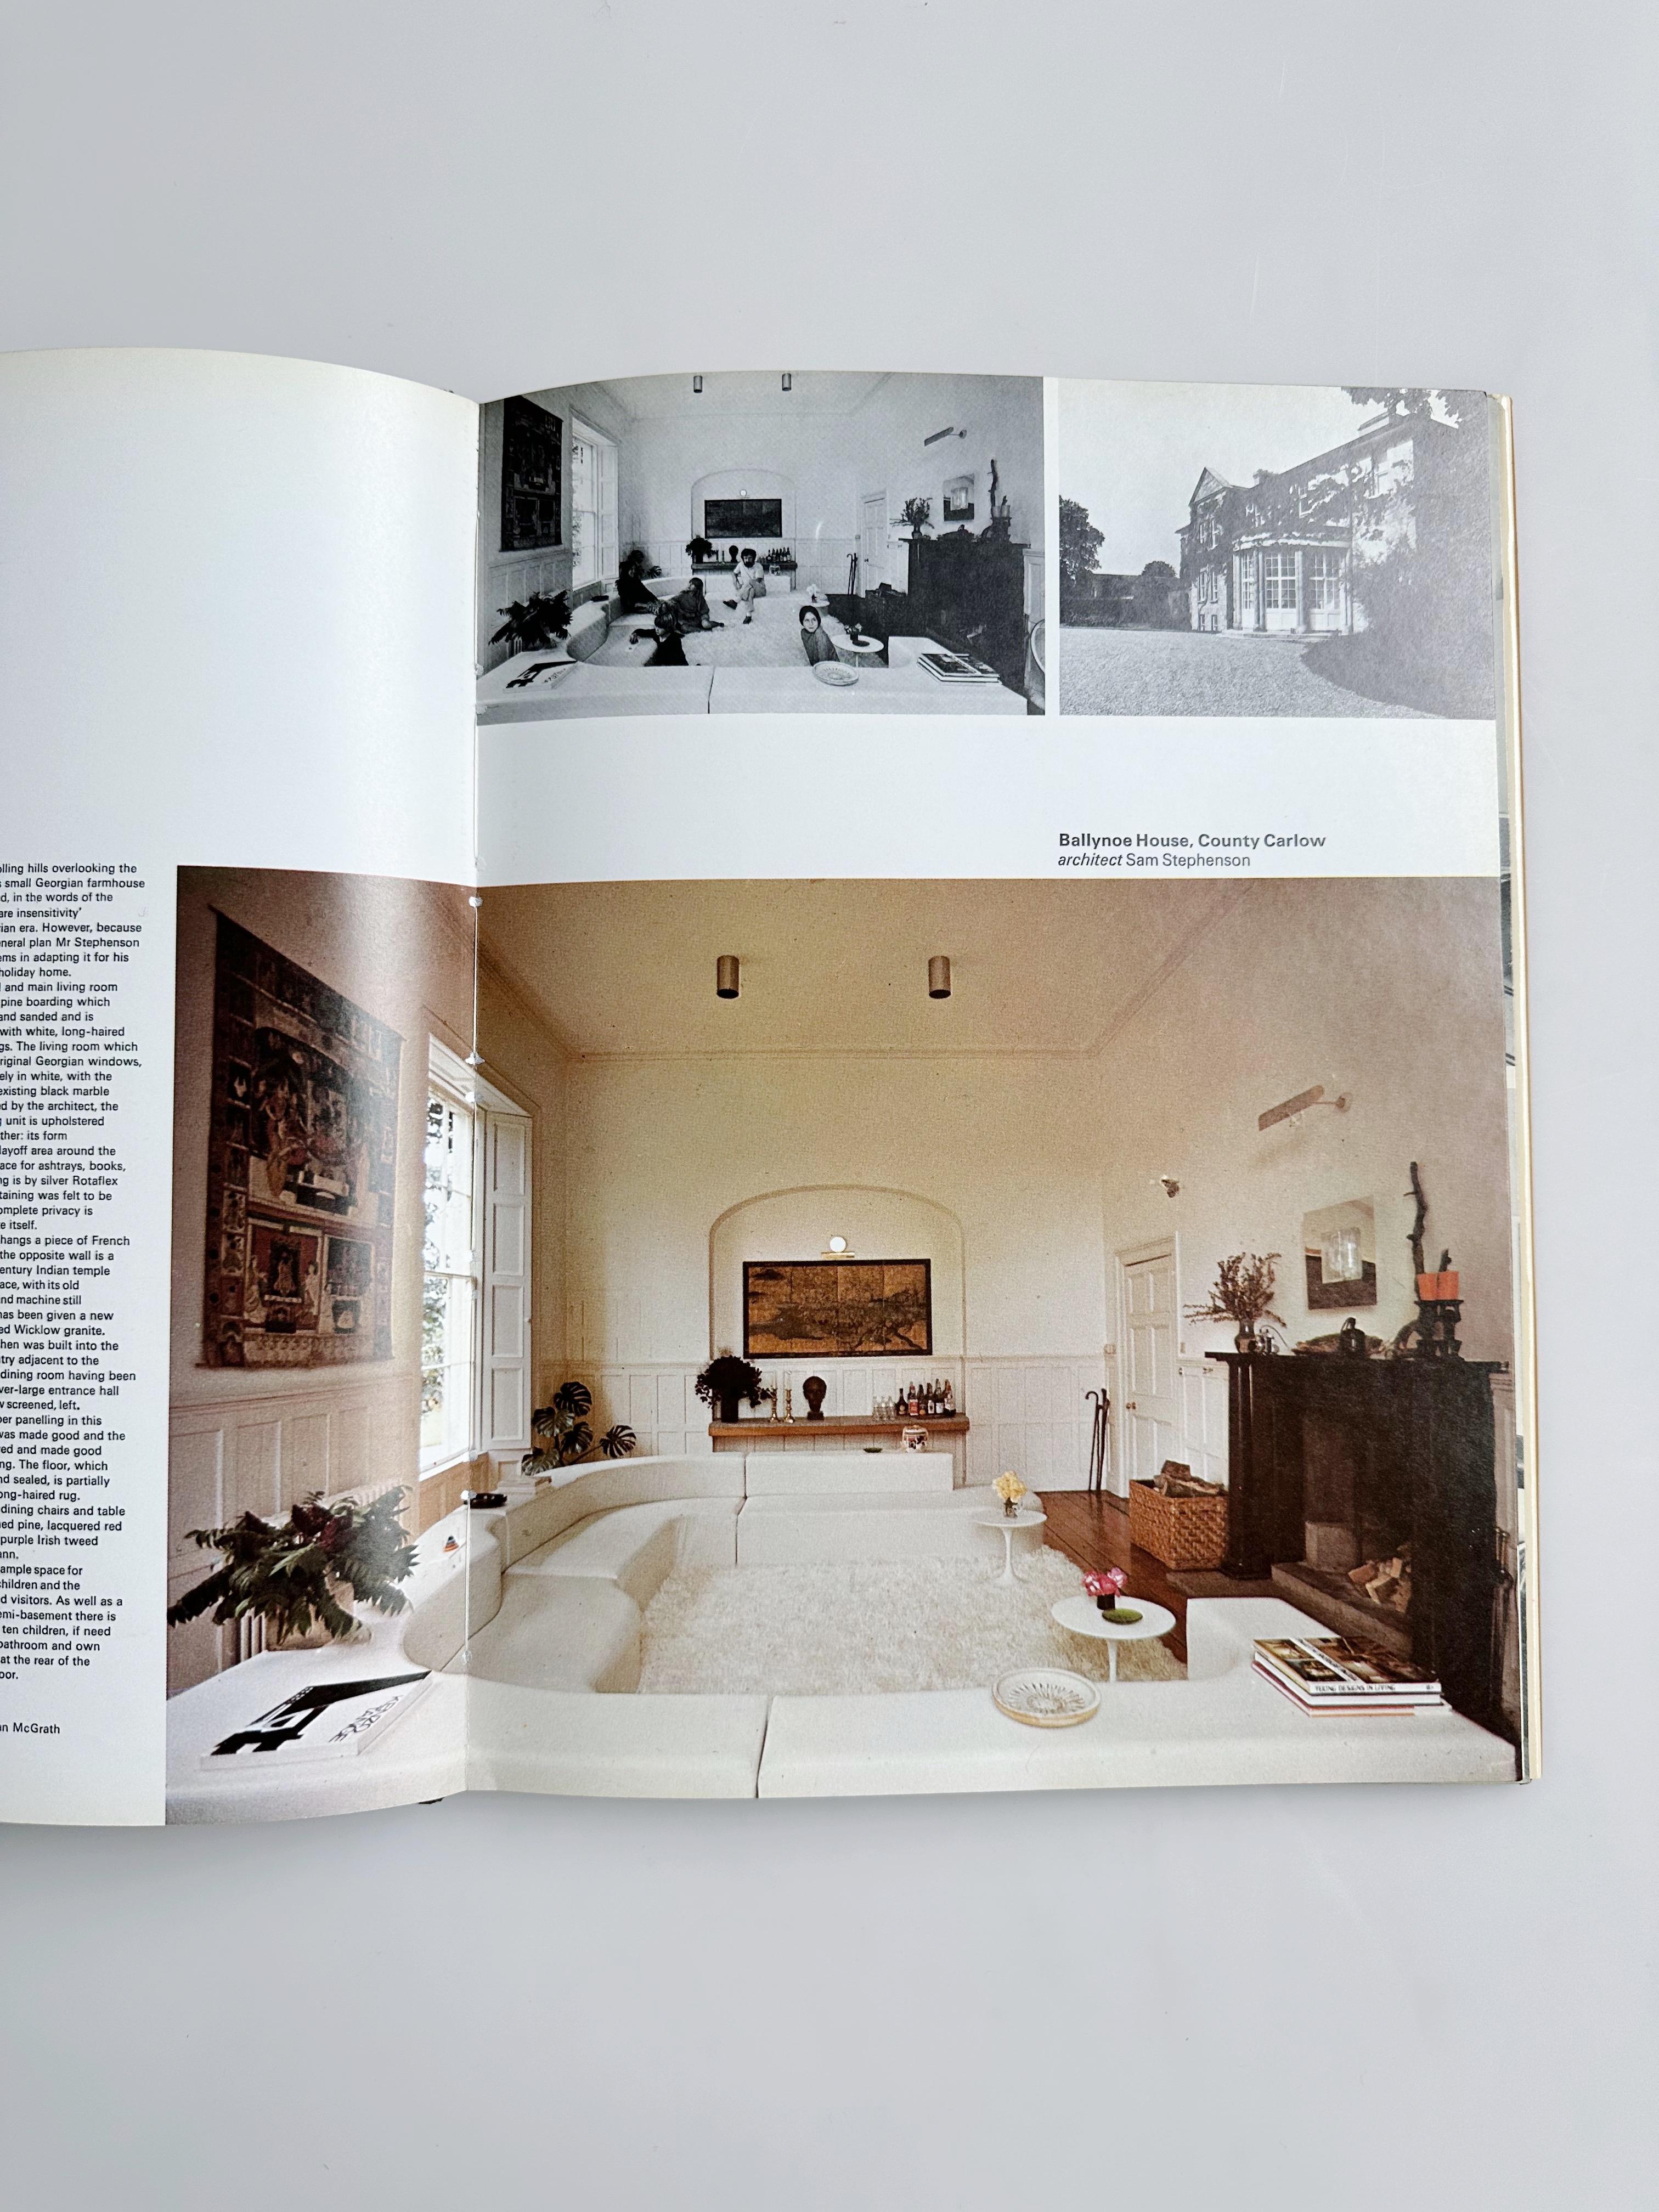 Dekorative Kunst in moderner Inneneinrichtung, 1973-1974 (Ende des 20. Jahrhunderts)